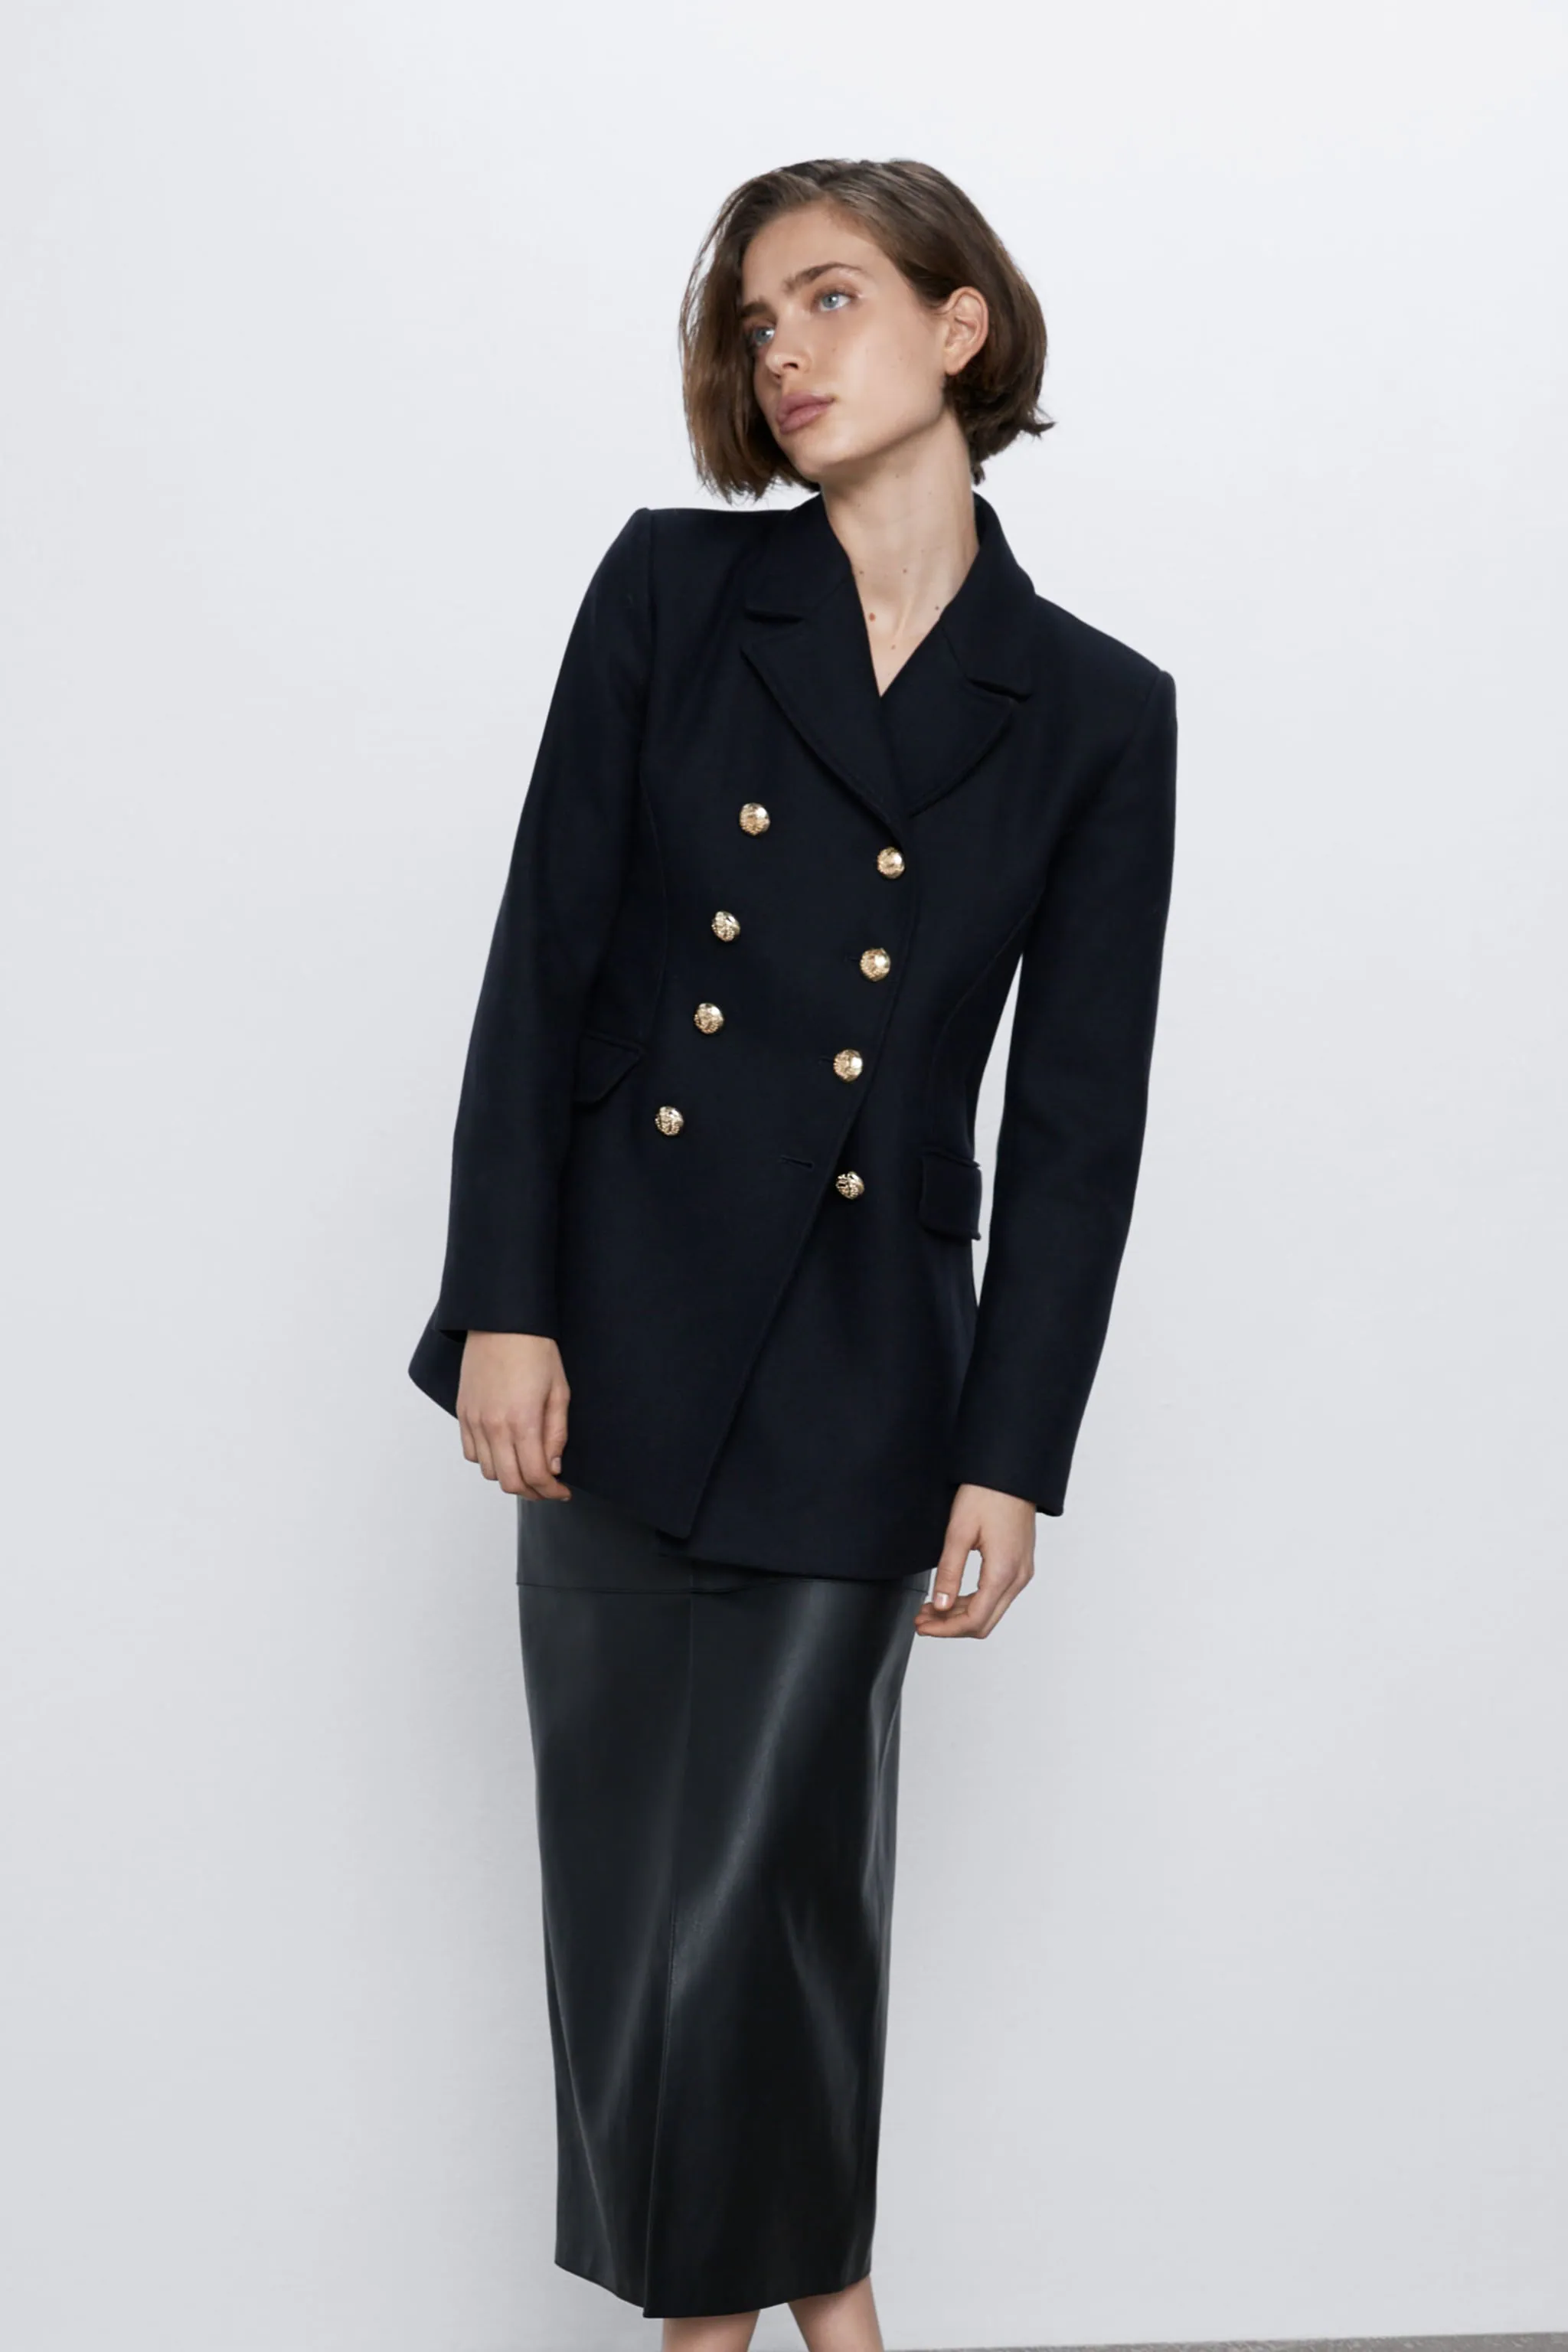 Fotos: Estos abrigos de menos de 50 euros de los Special Prices de Zara te harán las rebajas | Mujer Hoy